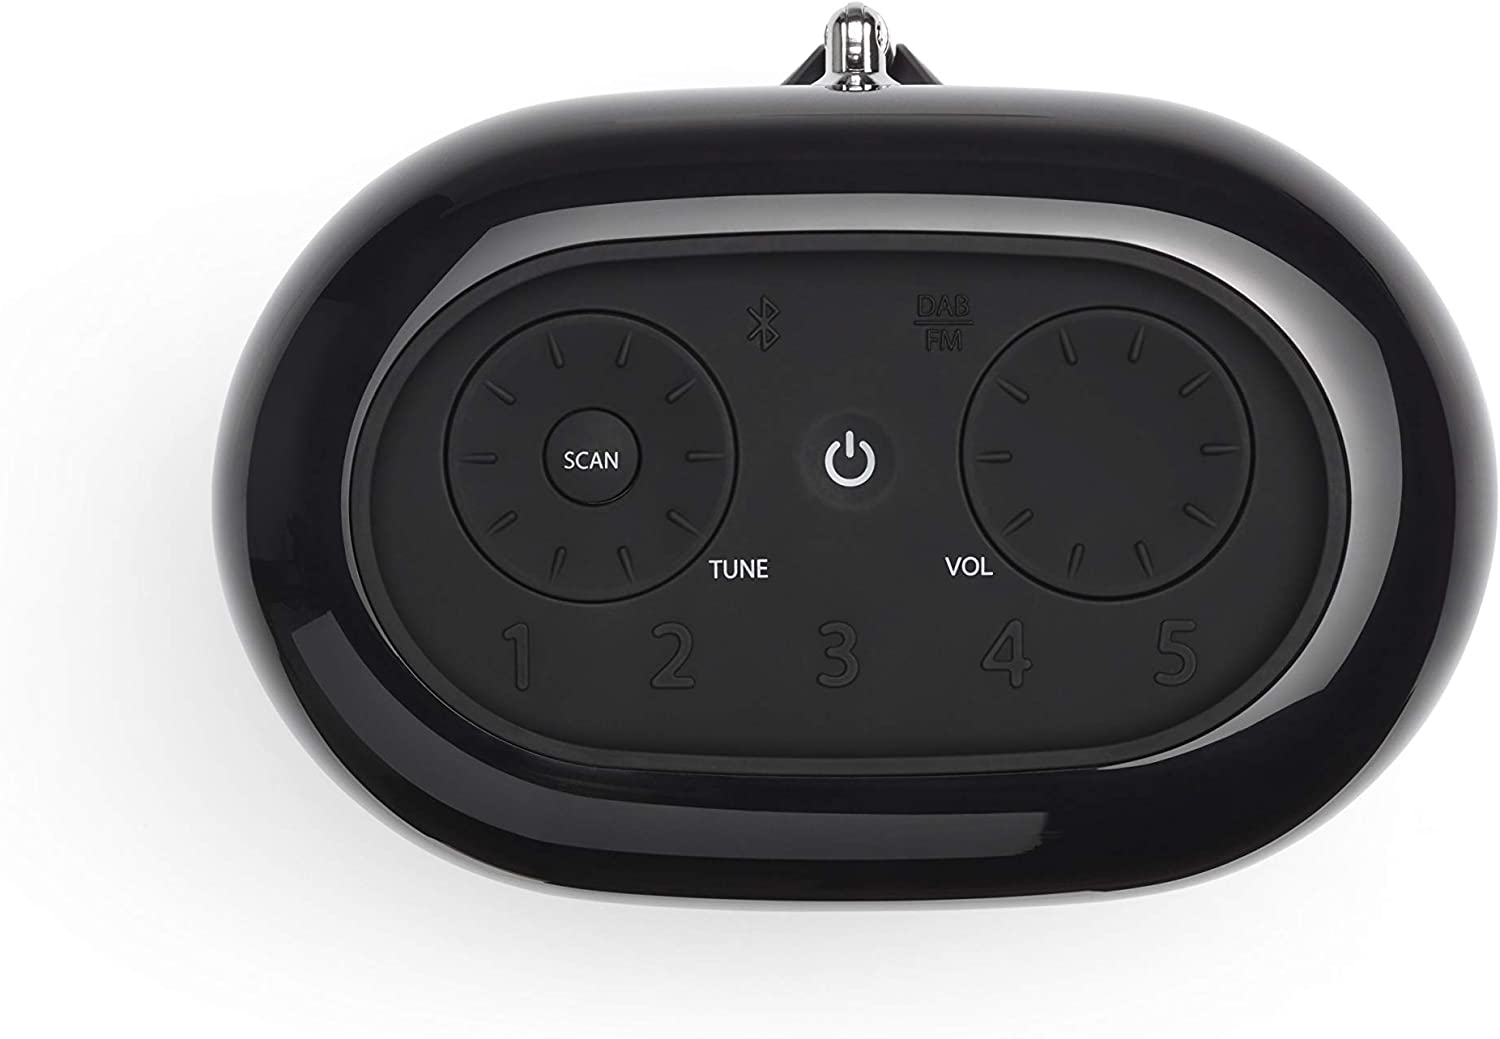 JBL Tuner XL Portable Waterproof FM Radio Bluetooth Speaker JBLTUNERXLBL